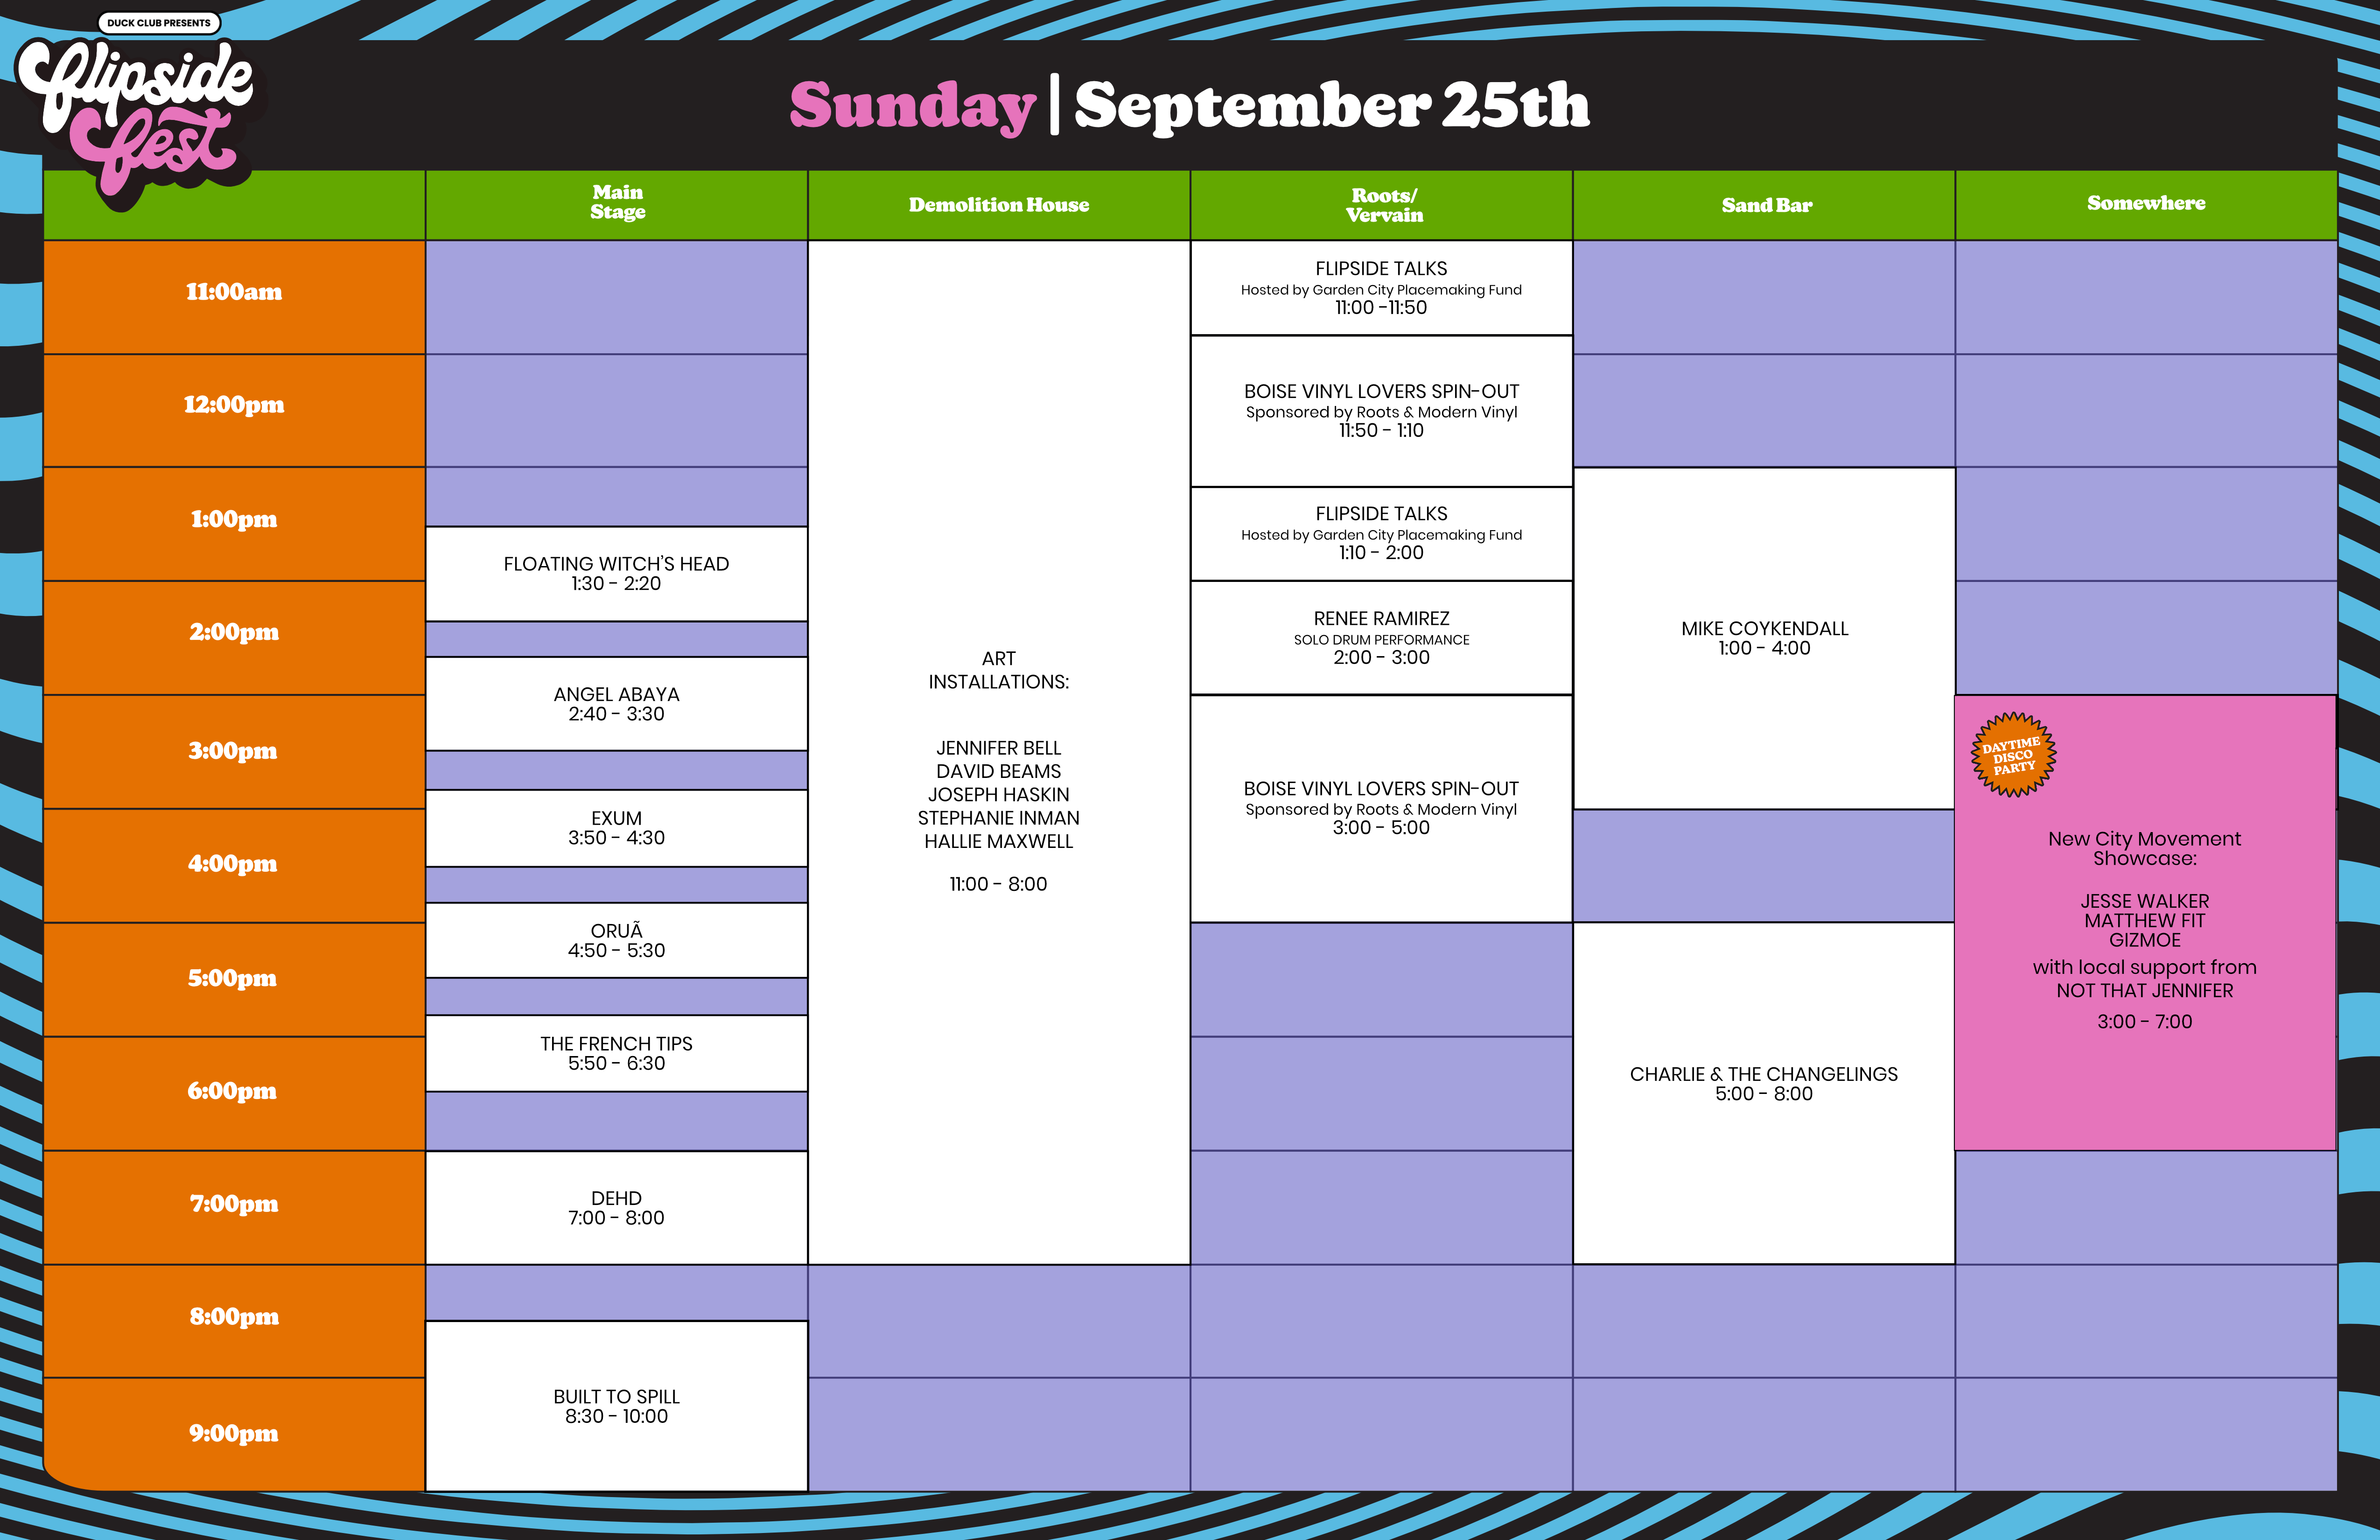 Sunday Flipside Fest Schedule Built to Spill, Dehd